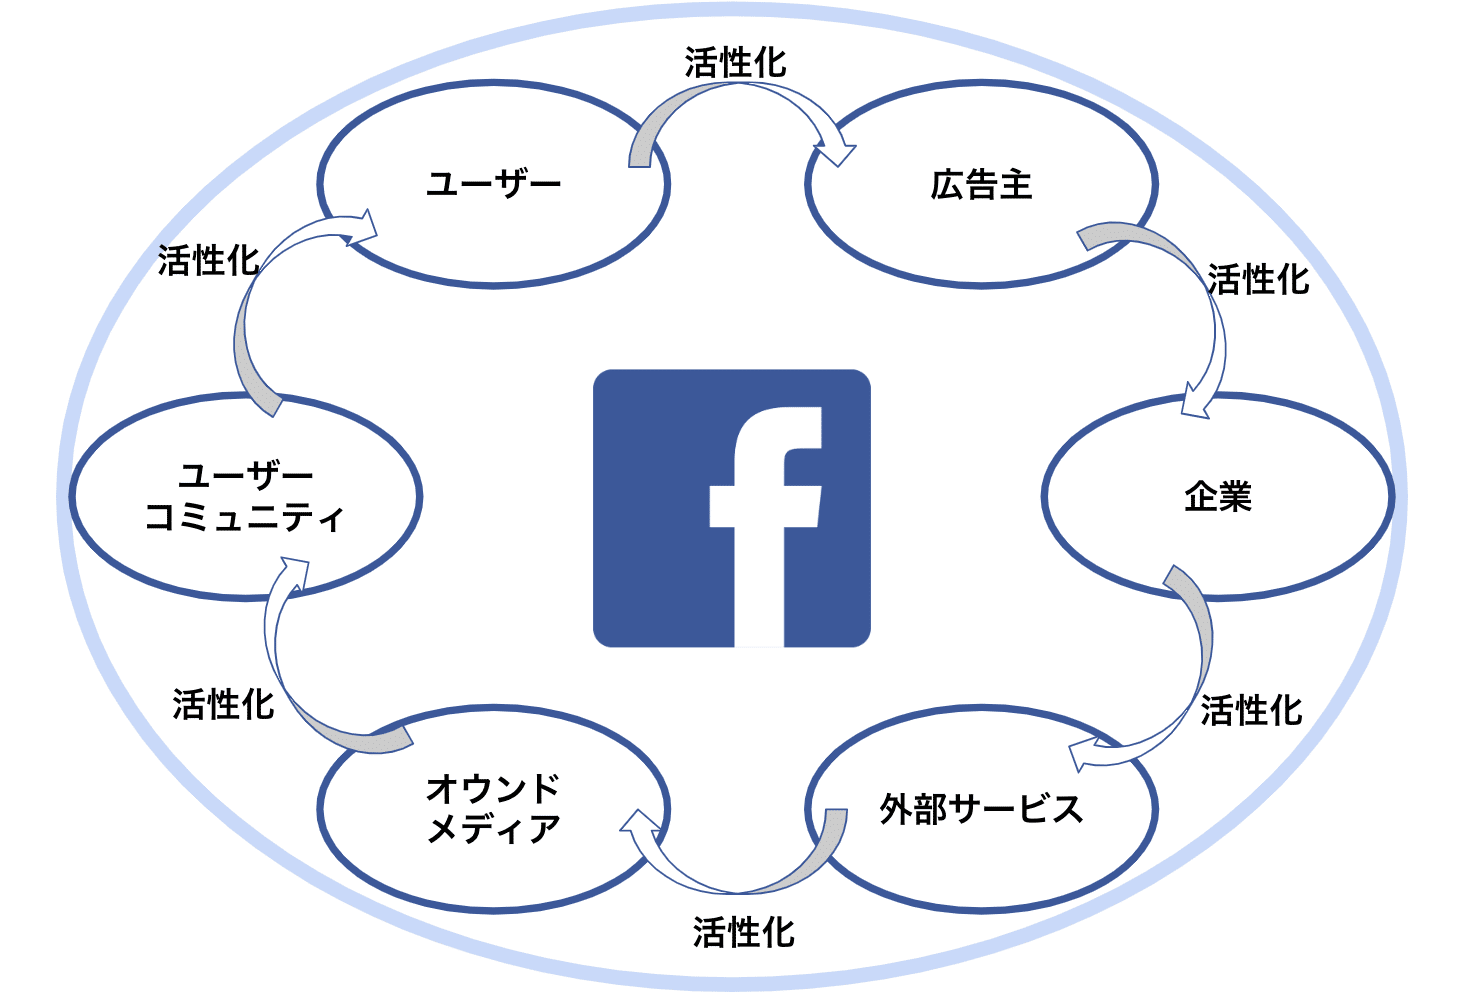 フェイスブックのエコシステム